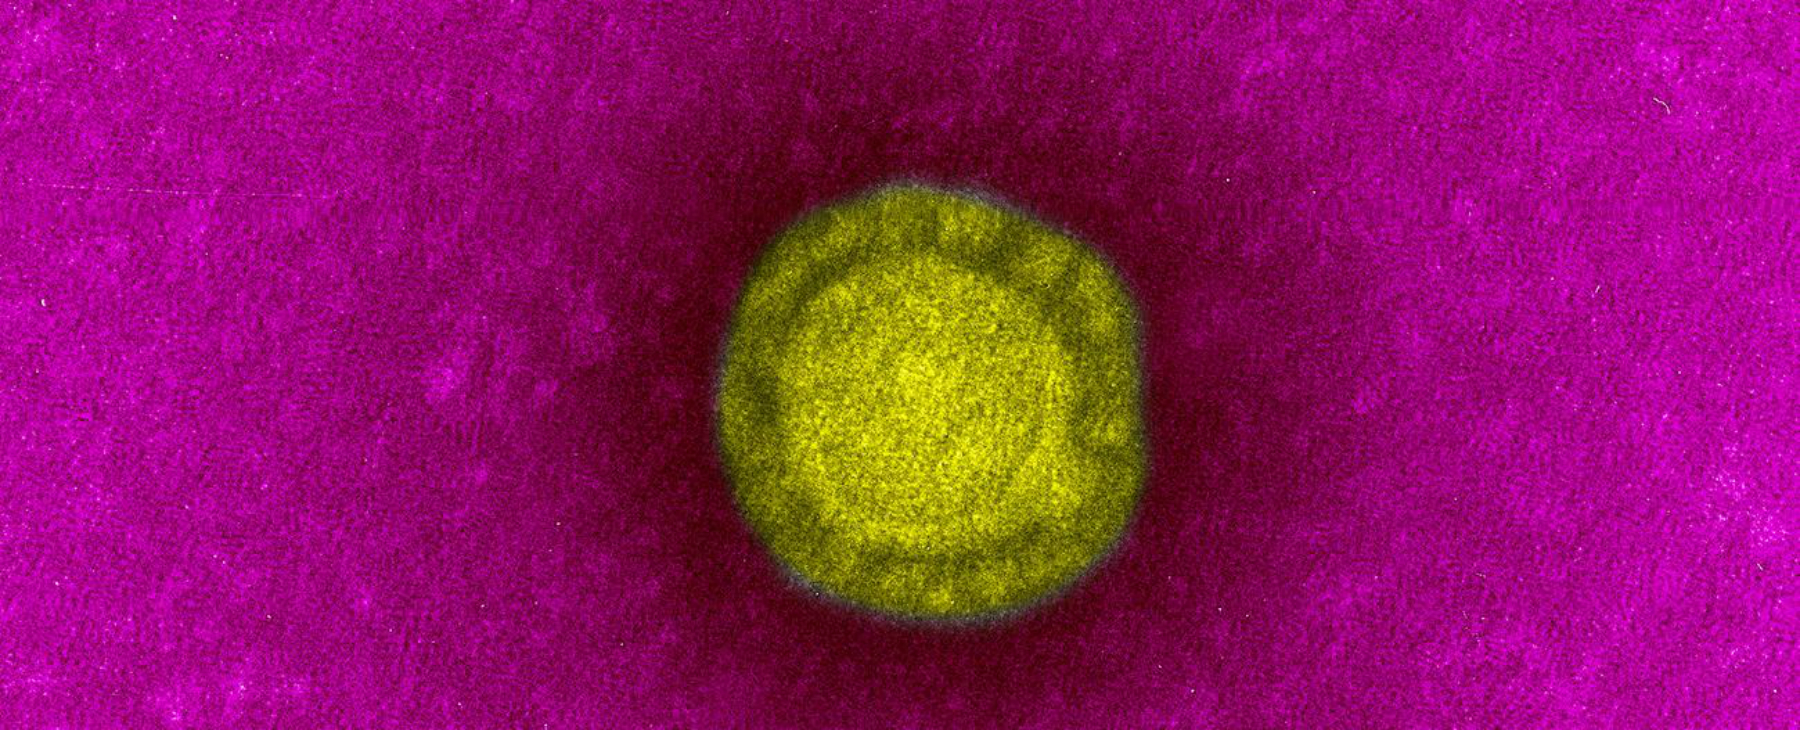 Un coronavirus, agent du syndrome respiratoire aiguë sévère ou Sras. © Institut Pasteur